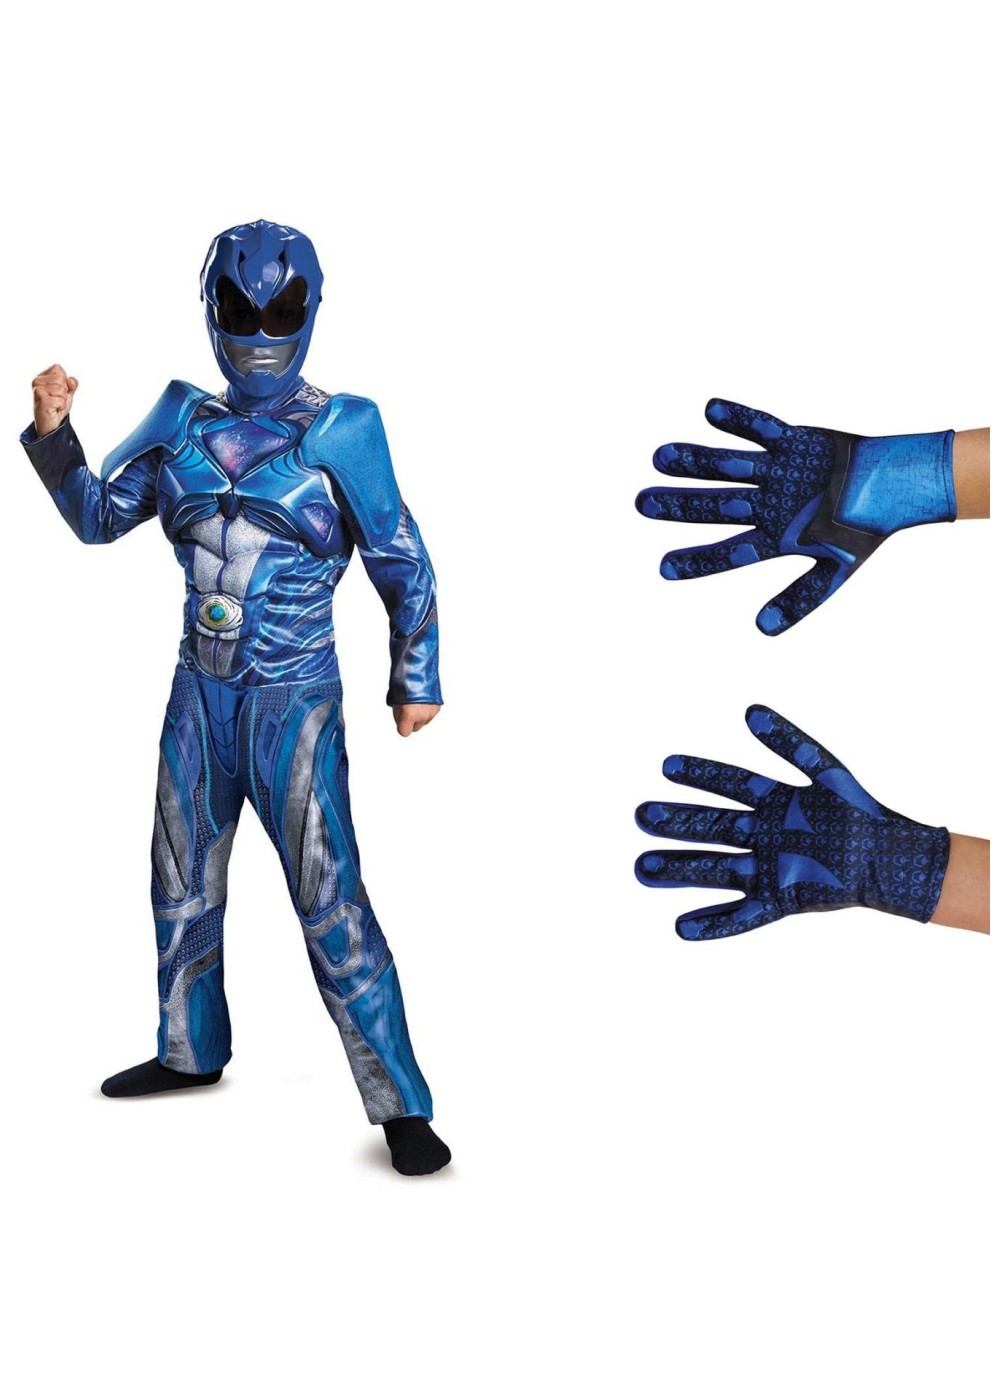 Boys Blue Power Ranger Costume Kit